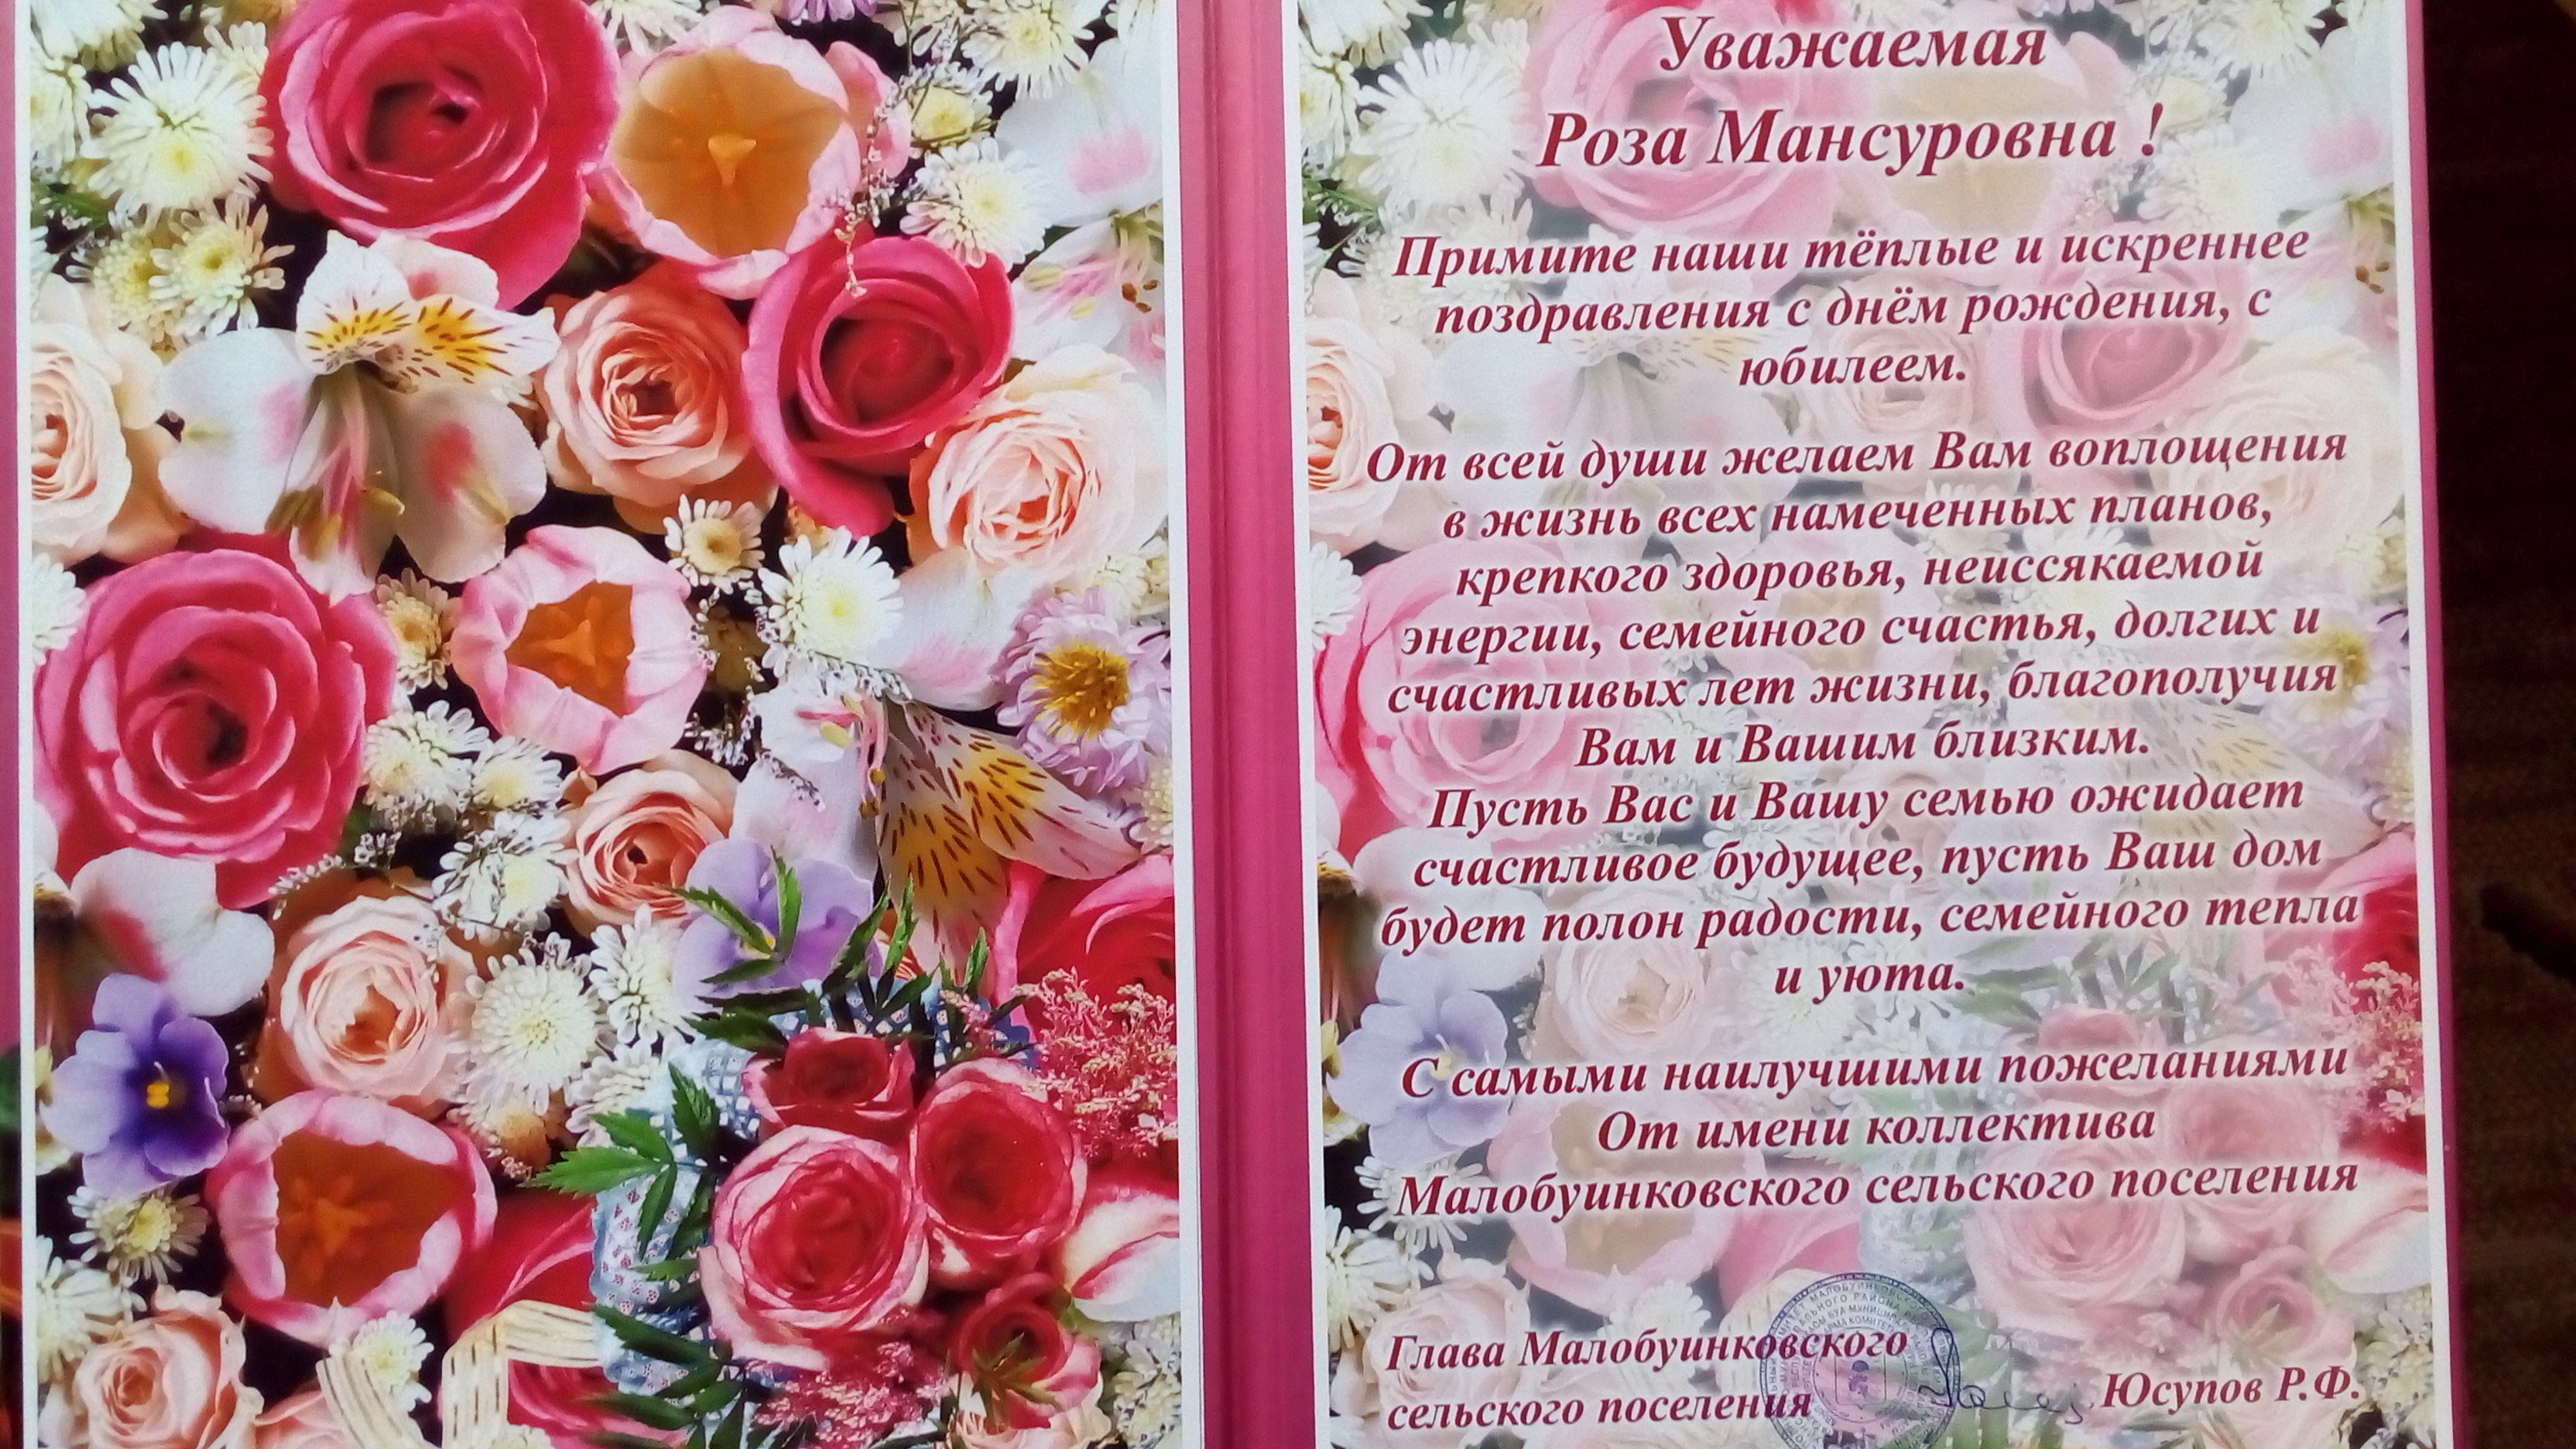 Поздравление на чувашском языке с юбилеем